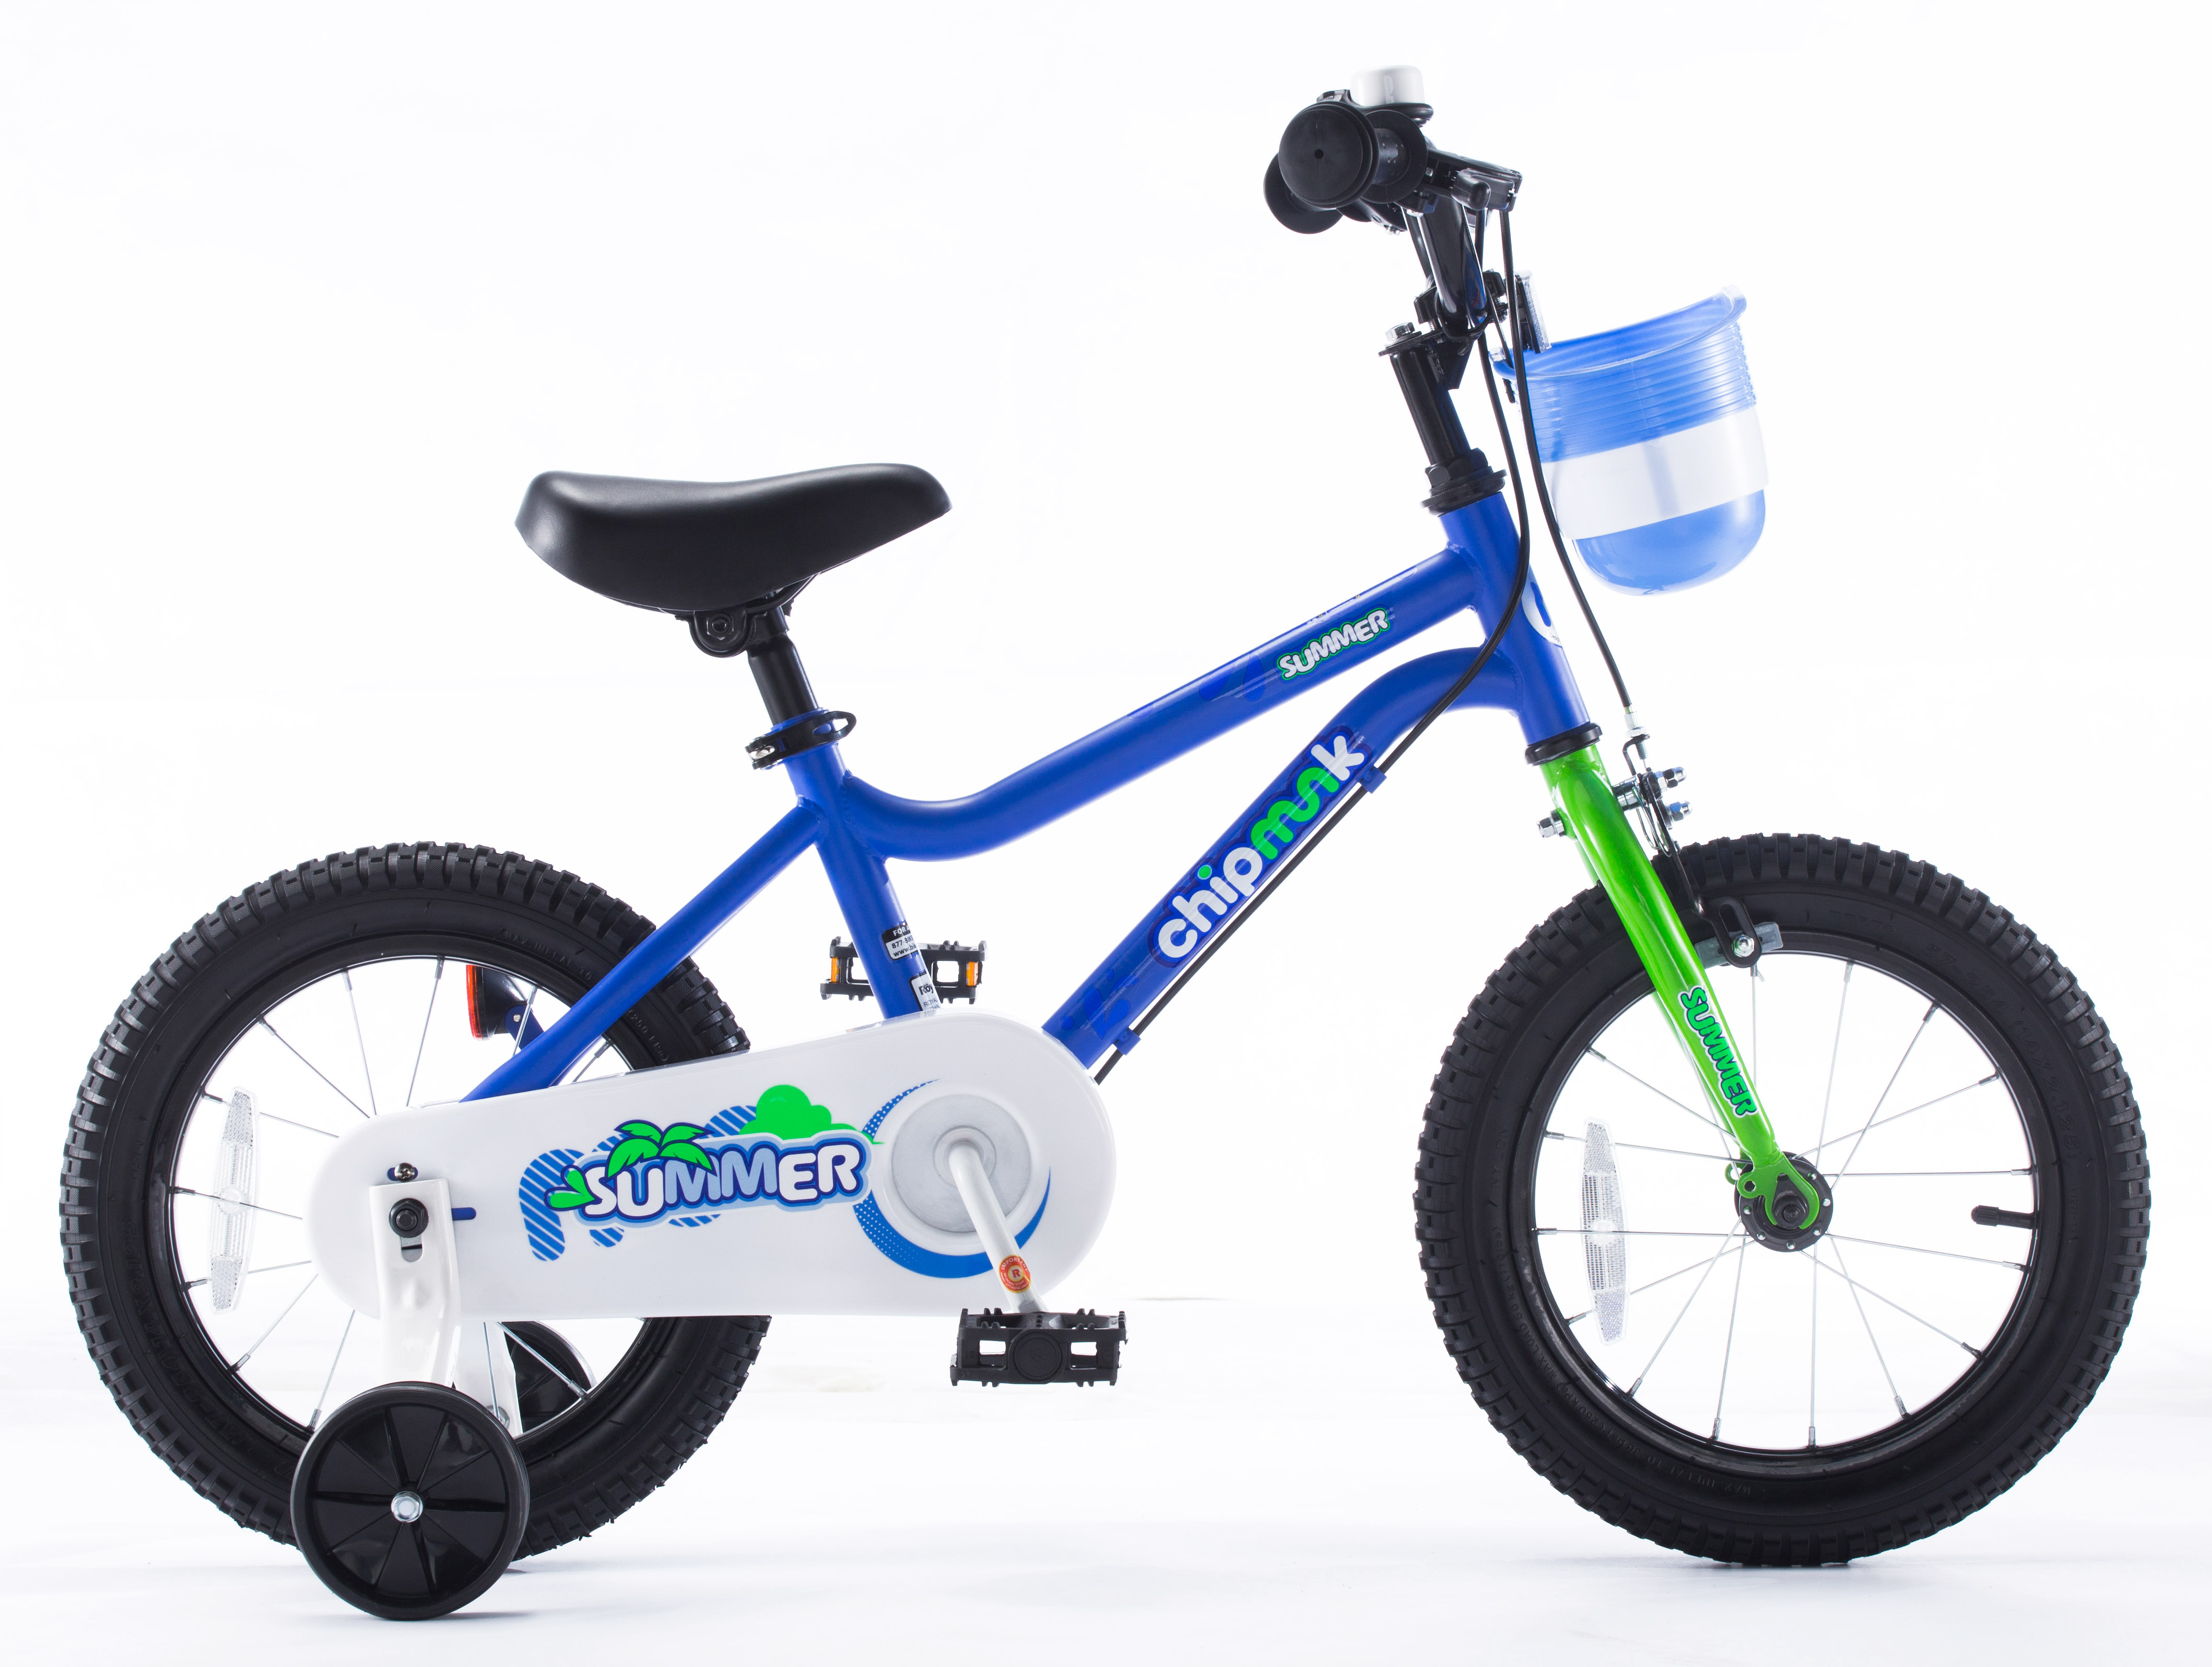  Отзывы о Детском велосипеде Royal Baby Chipmunk MK 14 (2021) 2021